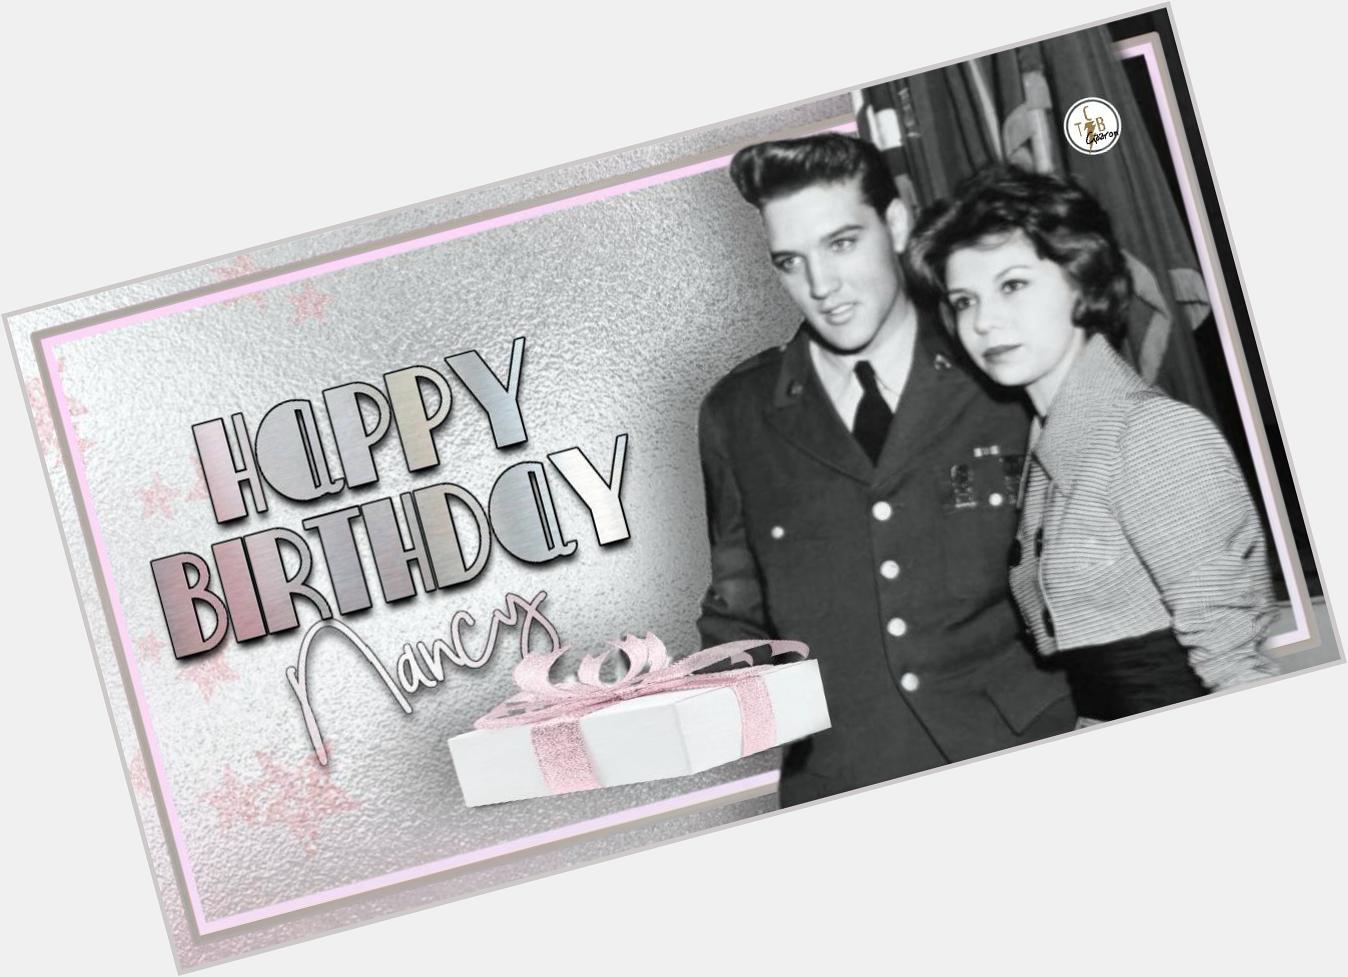      Happy birthday to Nancy Sinatra   